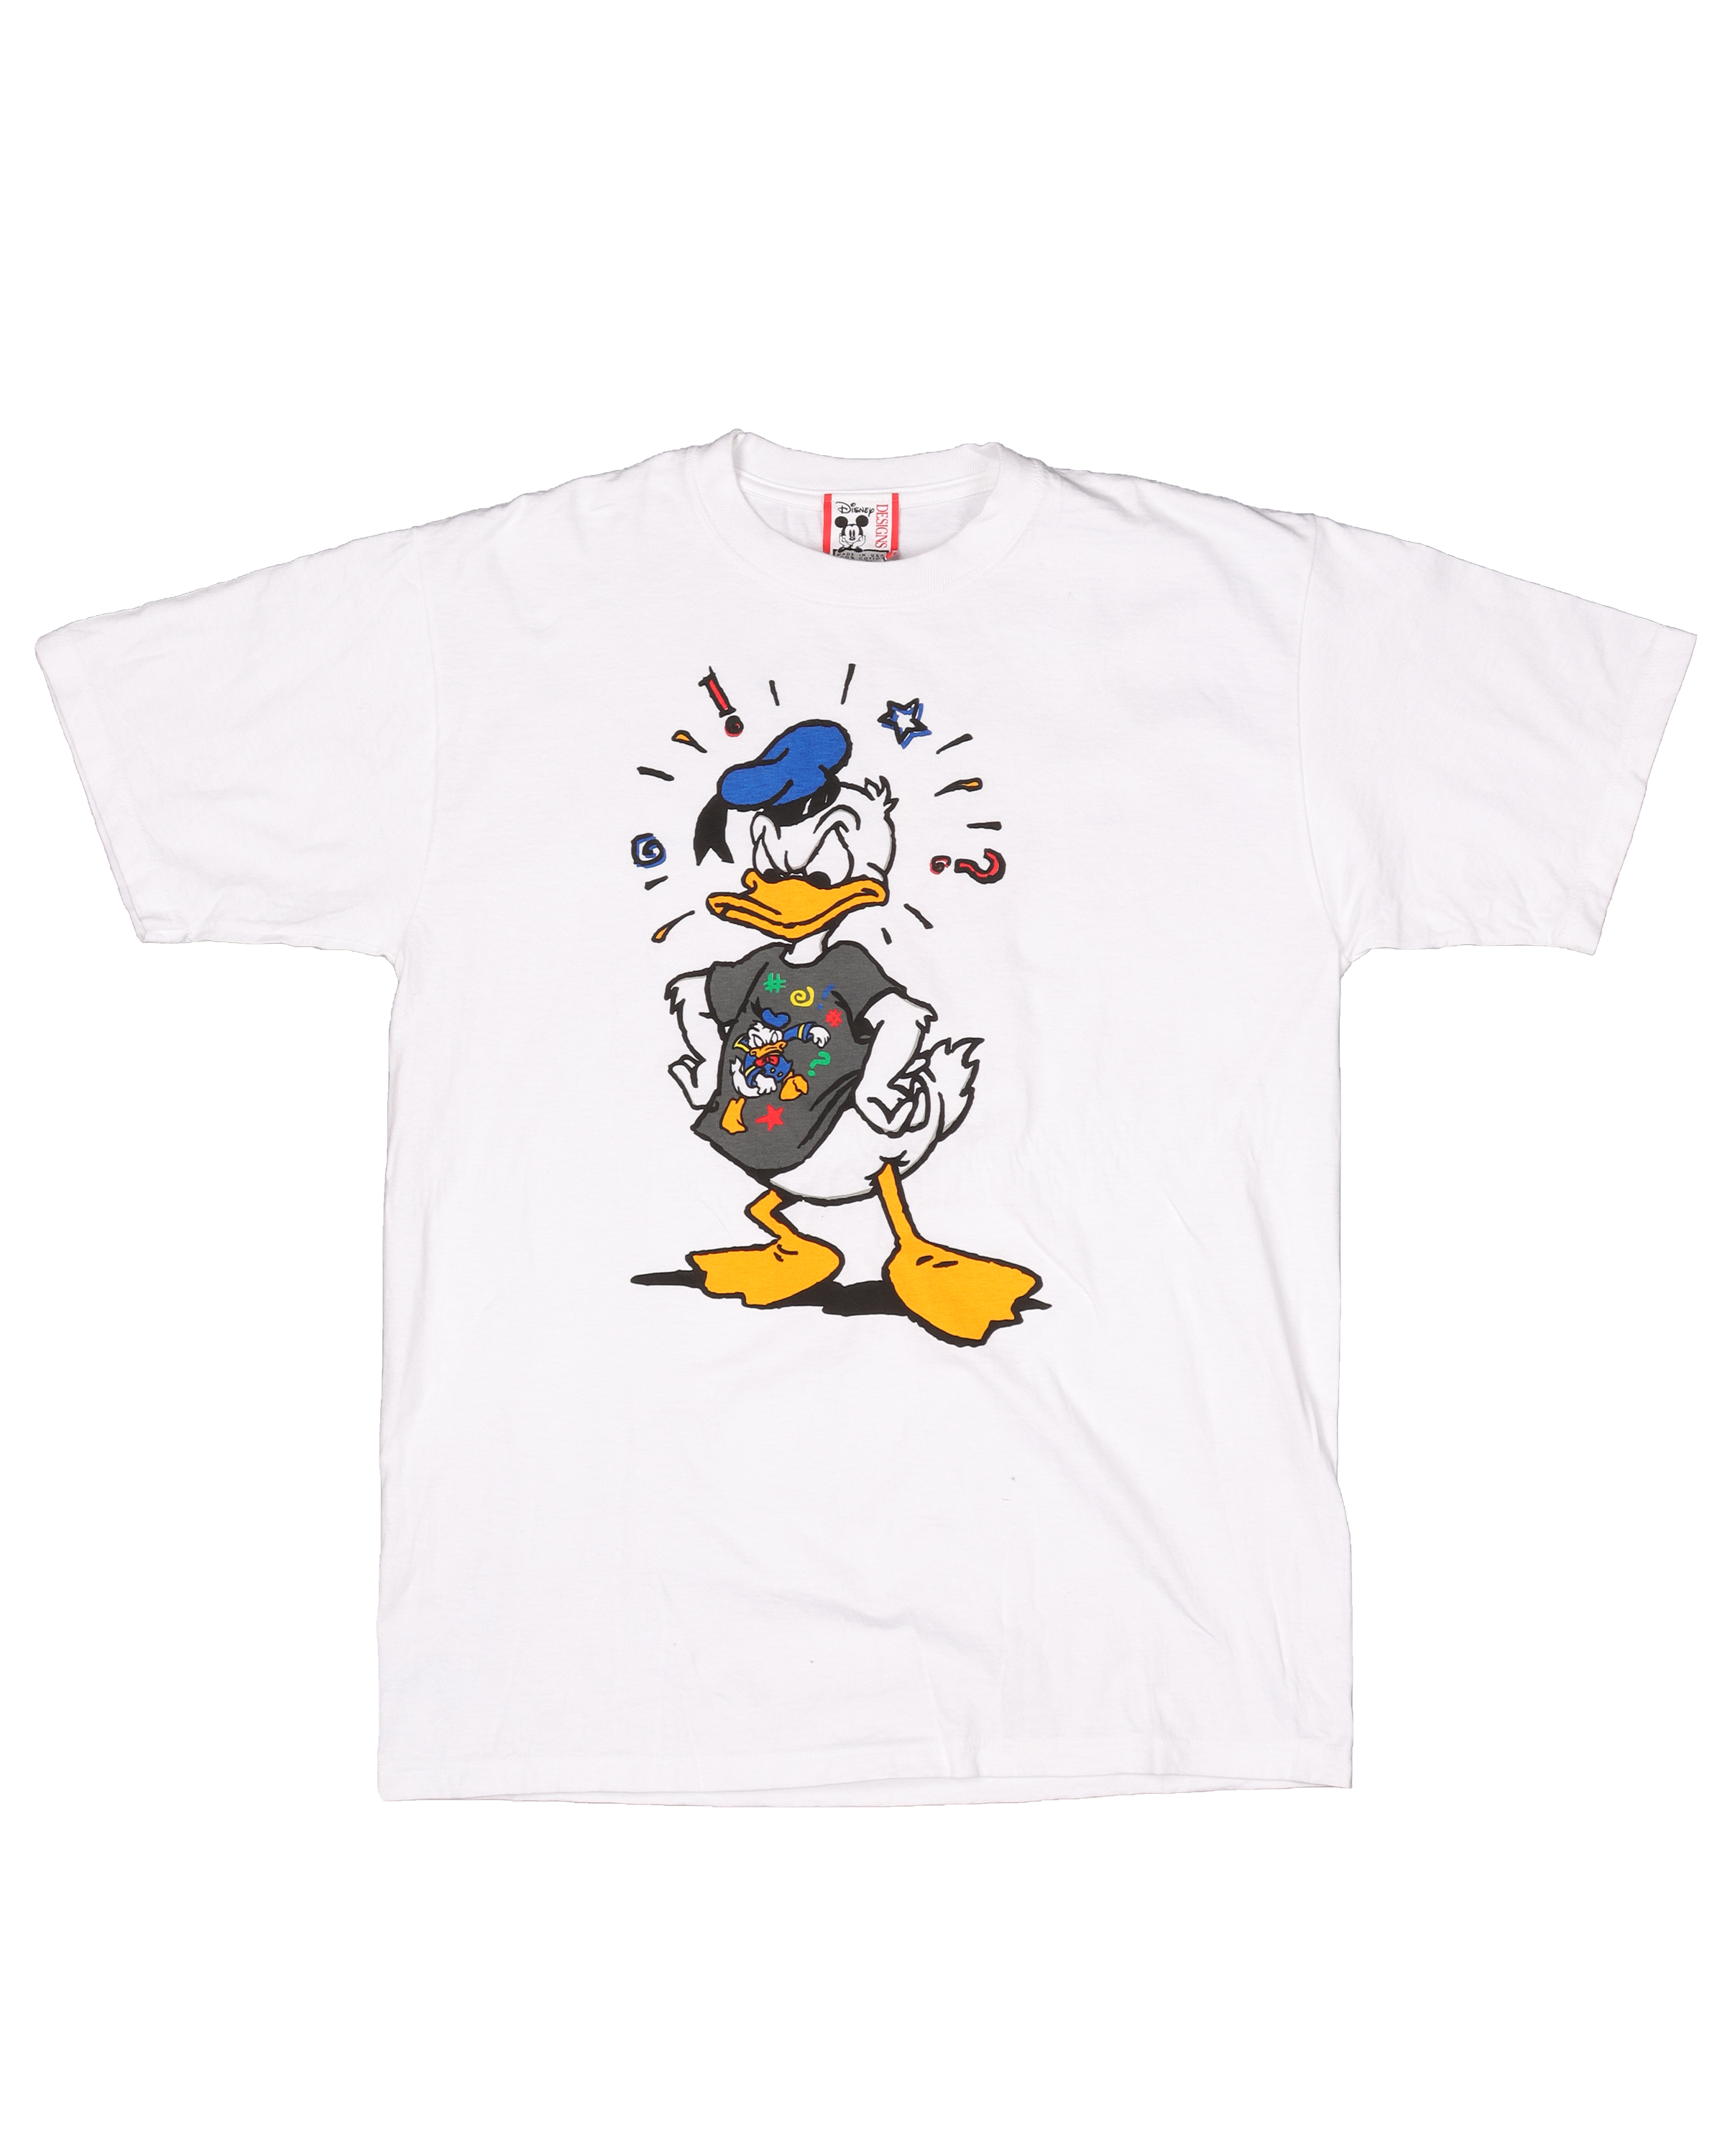 Walt Disney World "Donald Duck" T-Shirt